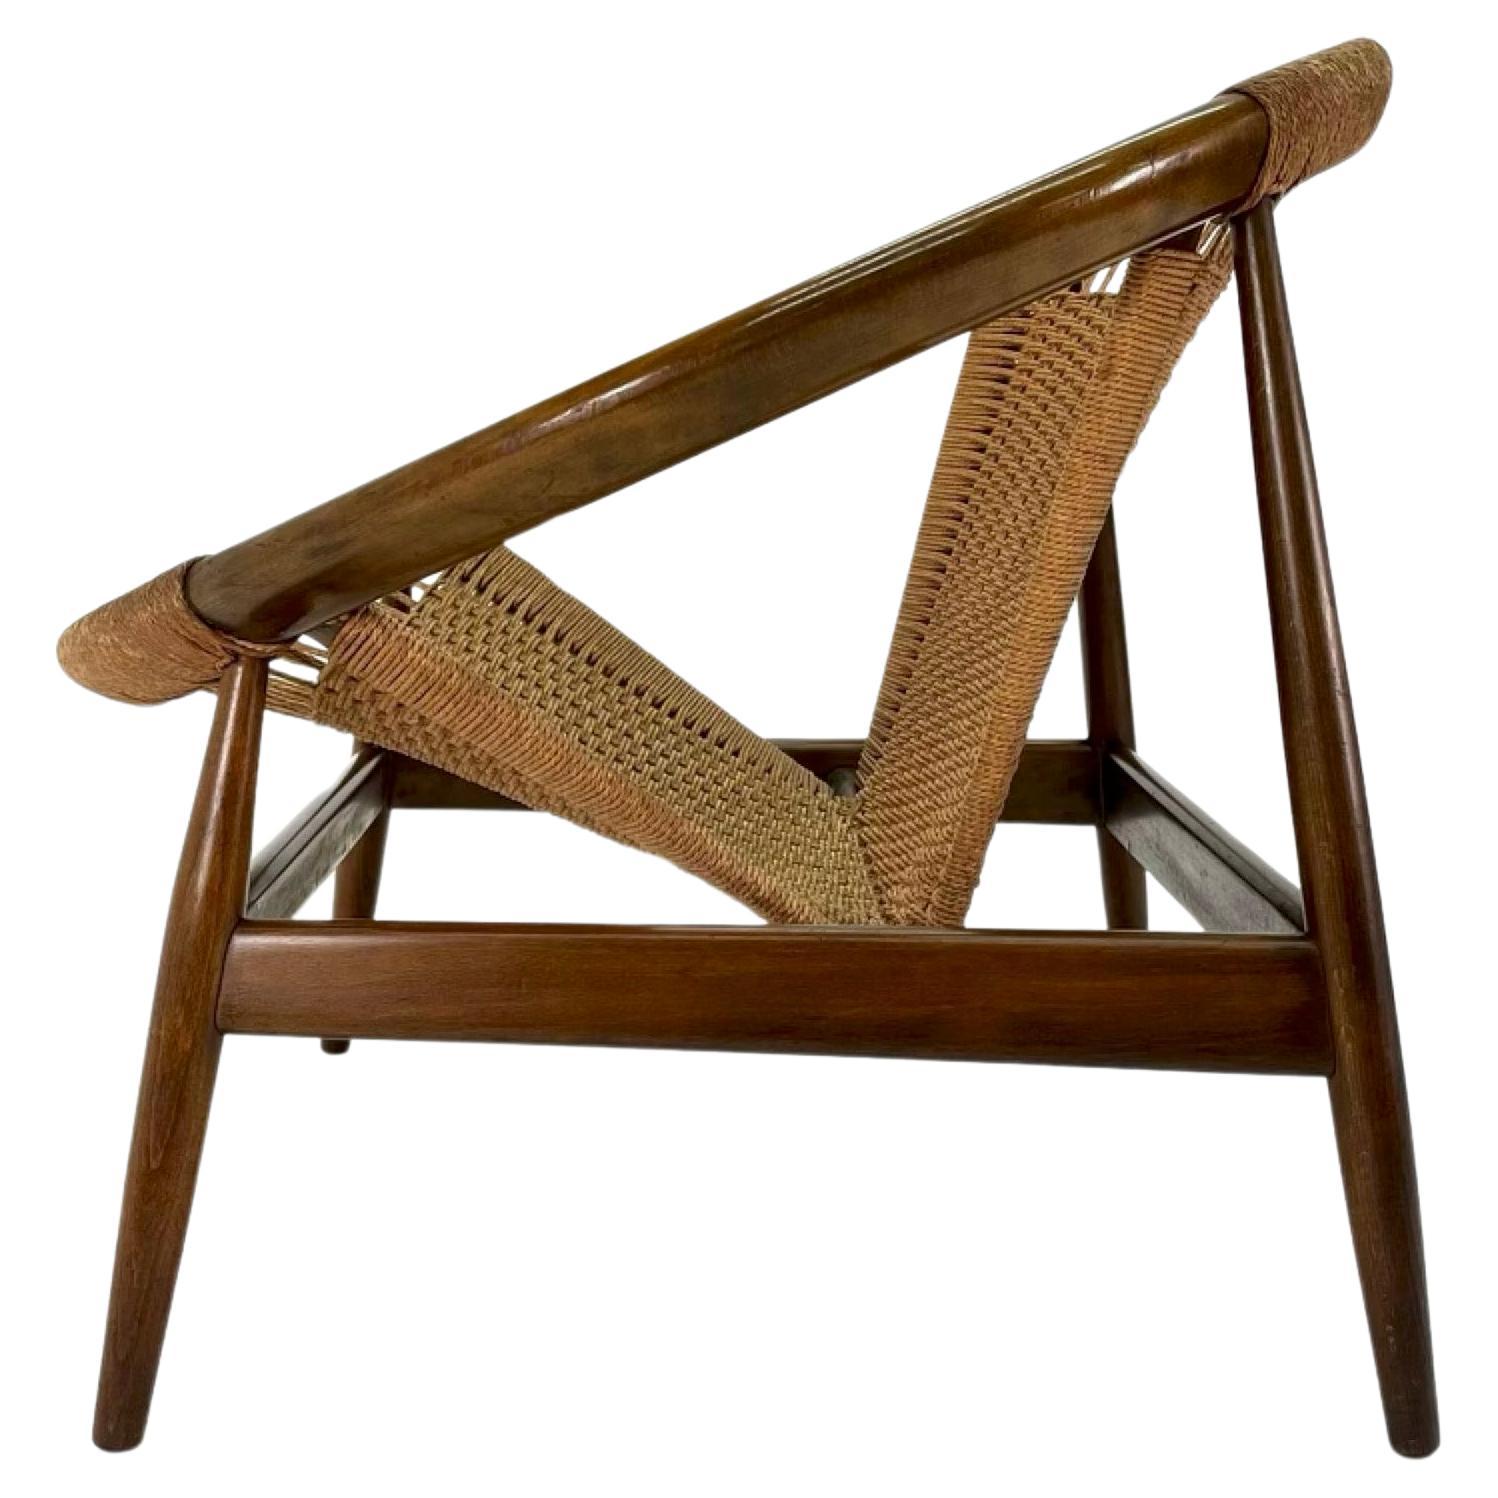 Ce fauteuil Ringstol Lounge d'Illum Wikkelsø est une expression parfaite du modernisme danois et un plaisir architectural et visuel. Il présente un cercle époustouflant plié à la vapeur en hêtre massif. Véritable classique de la modernité du milieu